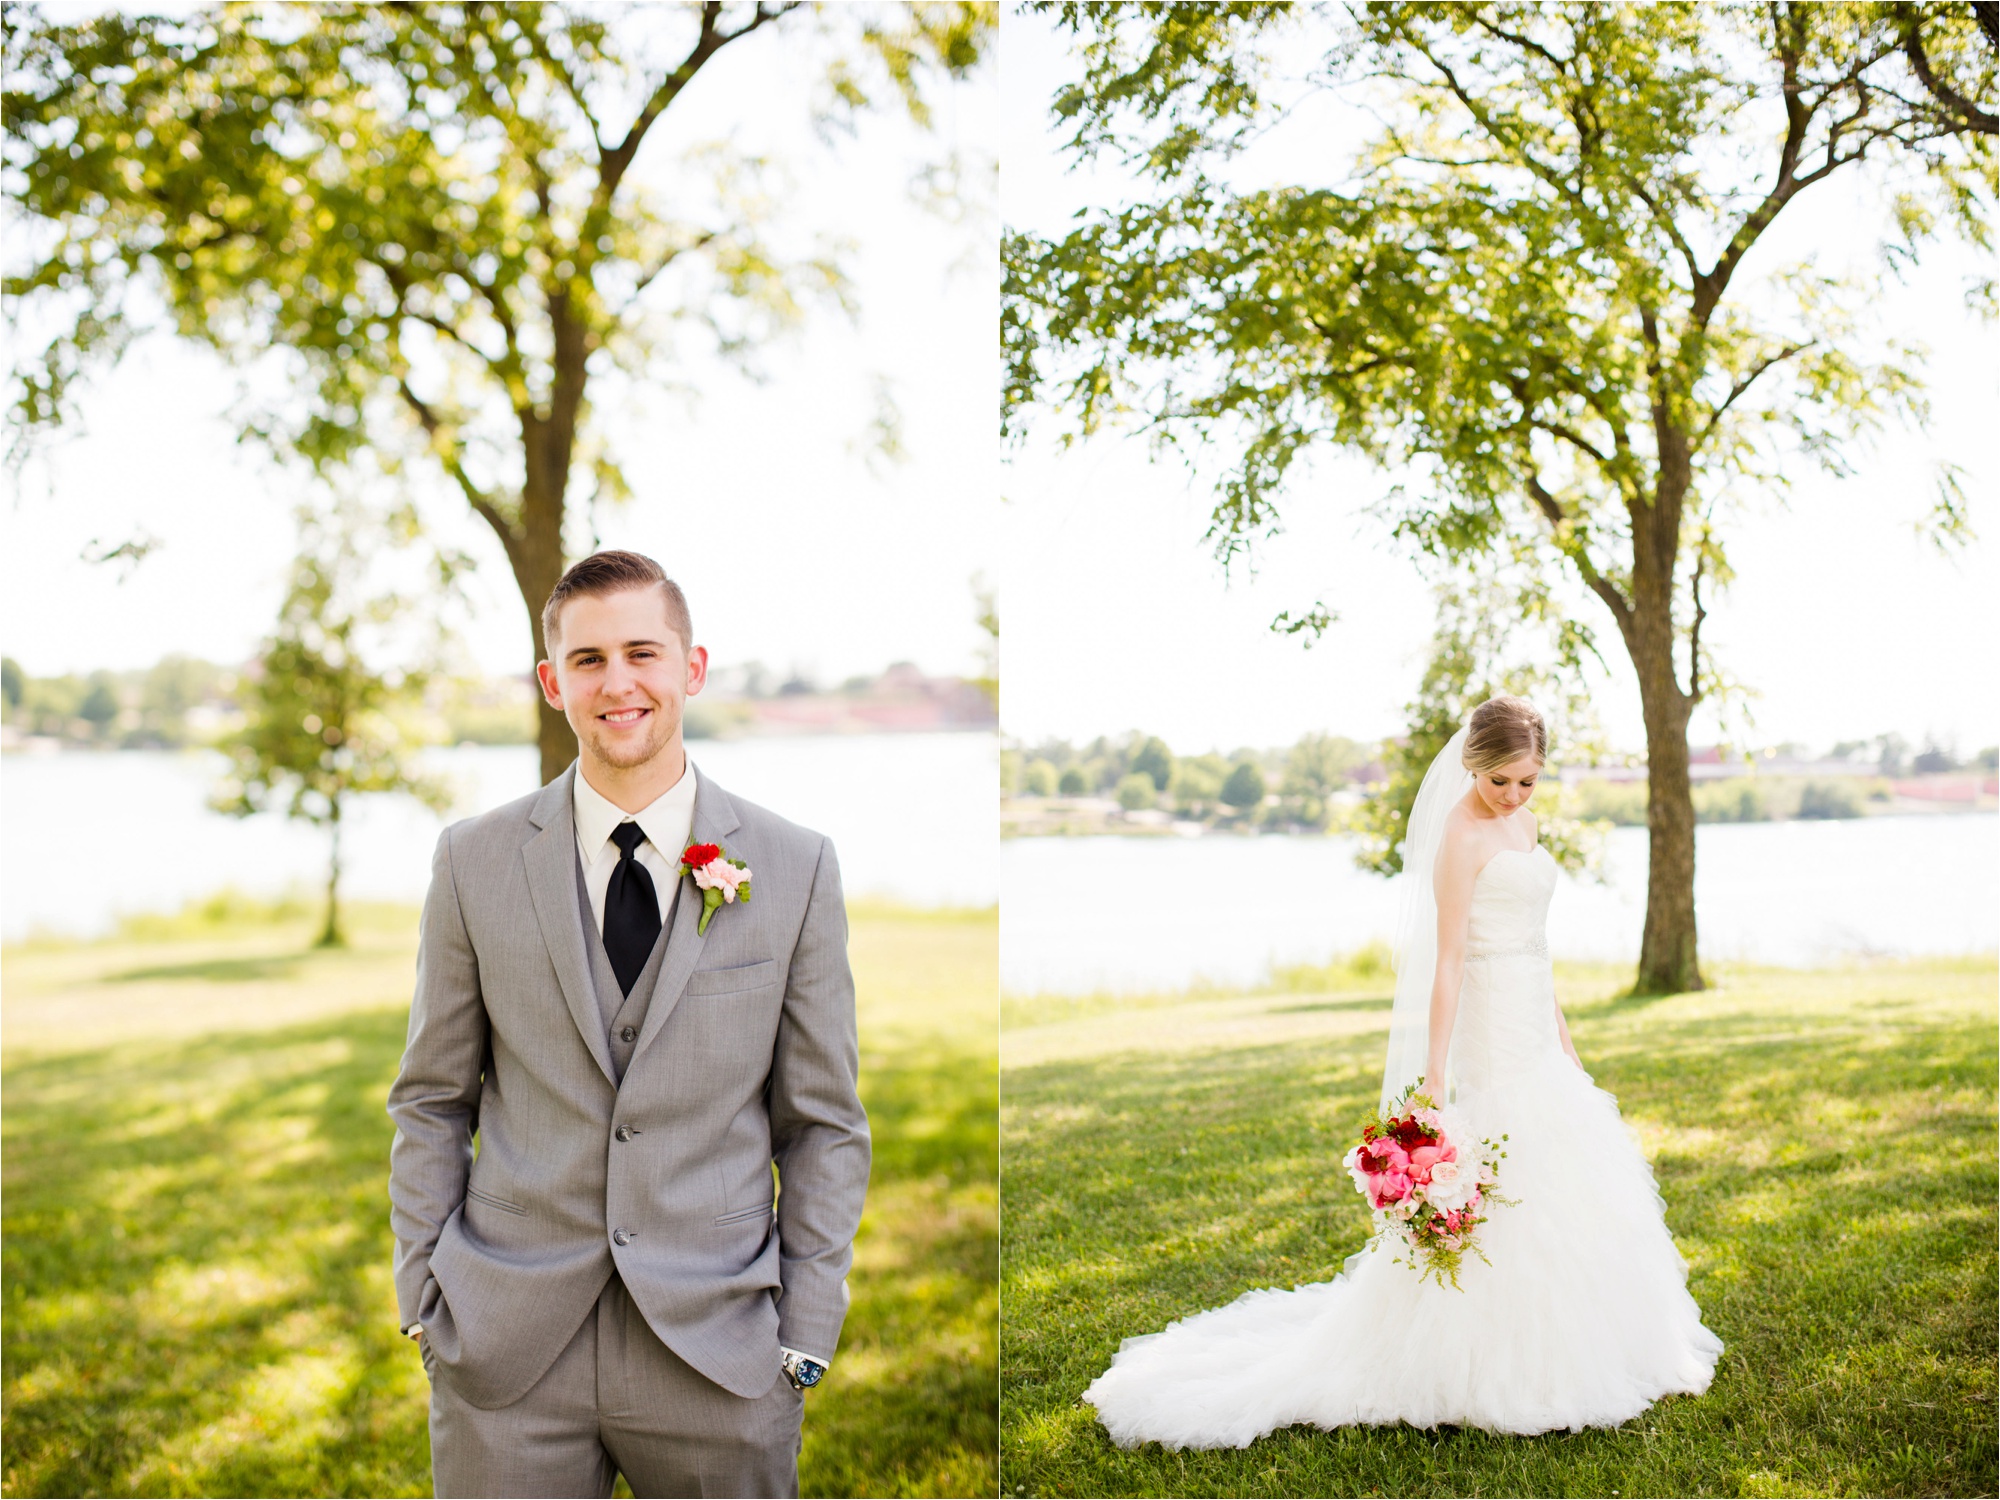 Caitlin and Luke Photography, Bloomington Normal Wedding Photographers, Illinois Wedding Photographers, Illinois Husband and Wife Wedding Photography Team_0326.jpg